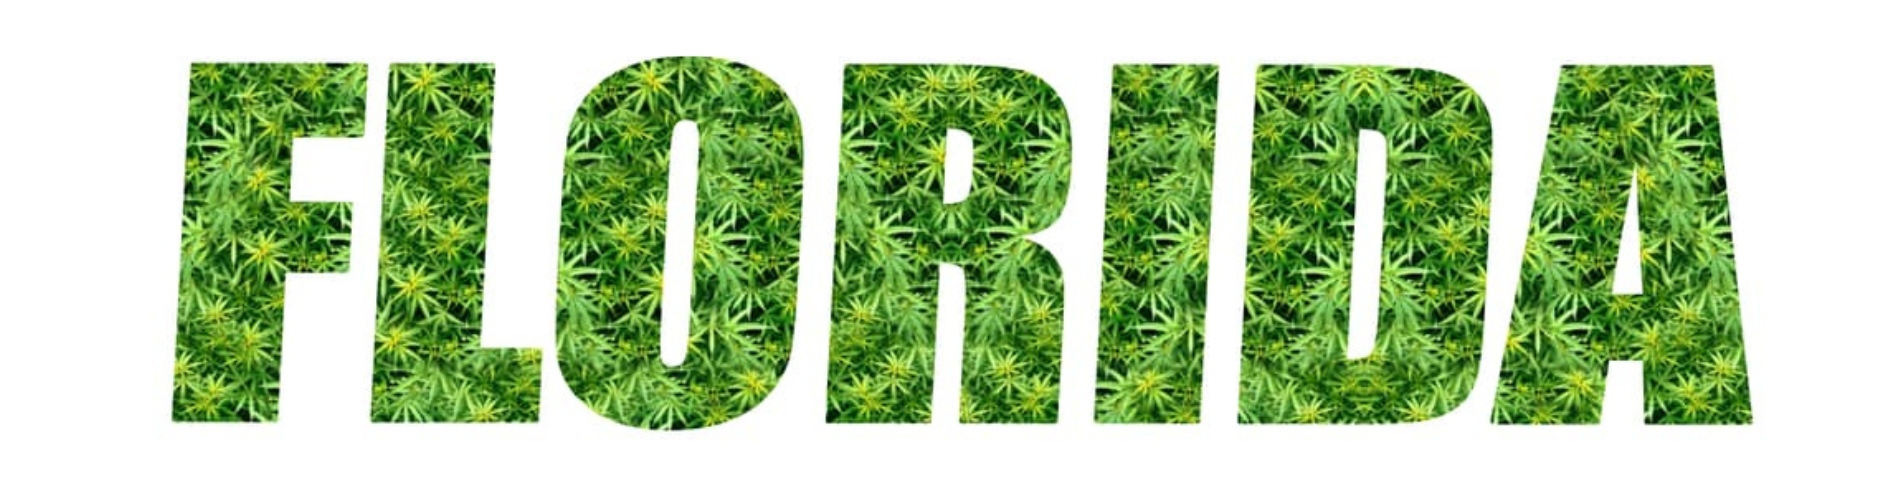 Launch of Florida Recreational Marijuana Legalization Initiative